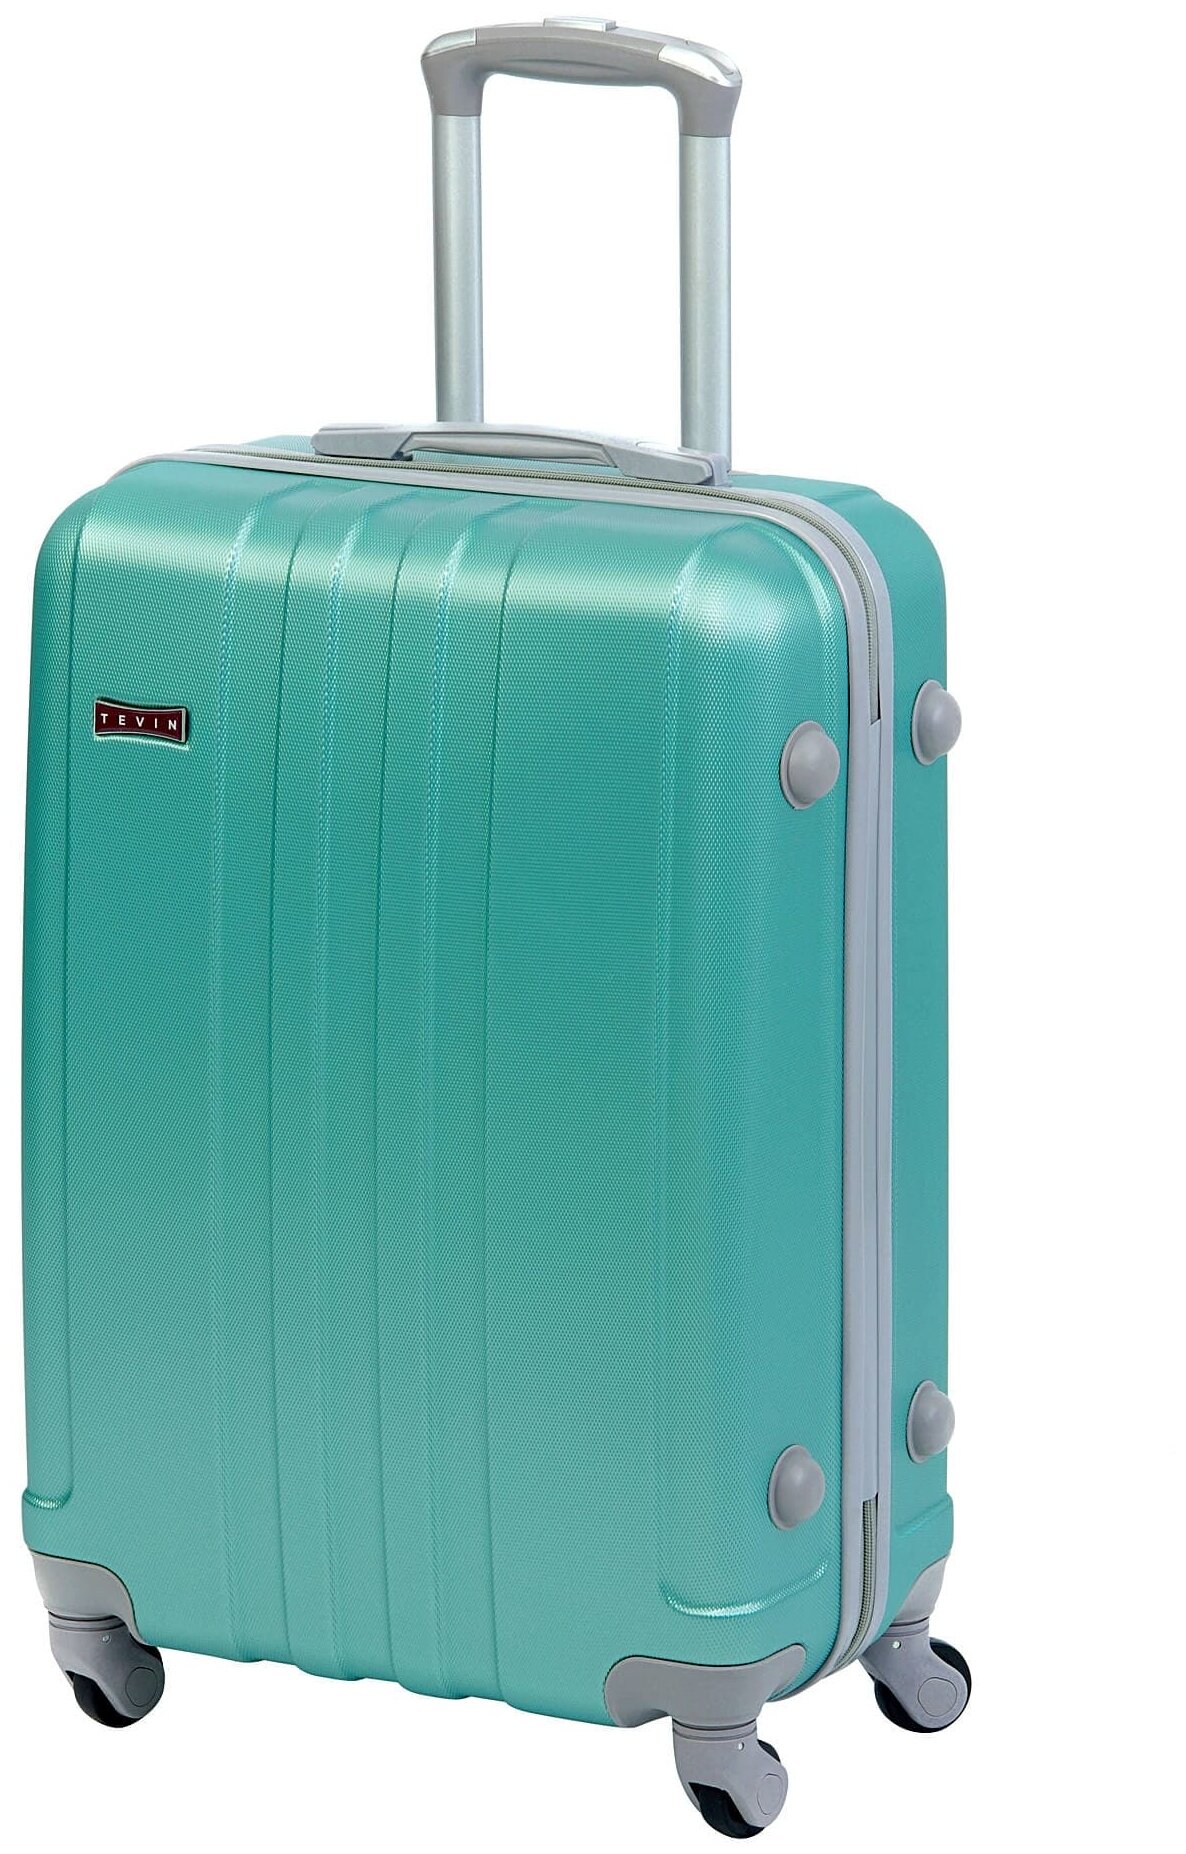 Чемодан на колесах дорожный средний багаж для путешествий s+ TEVIN размер С+ 60 см 52 л легкий 2.6 кг небольшой, прочный abs пластик Зеленый светлый